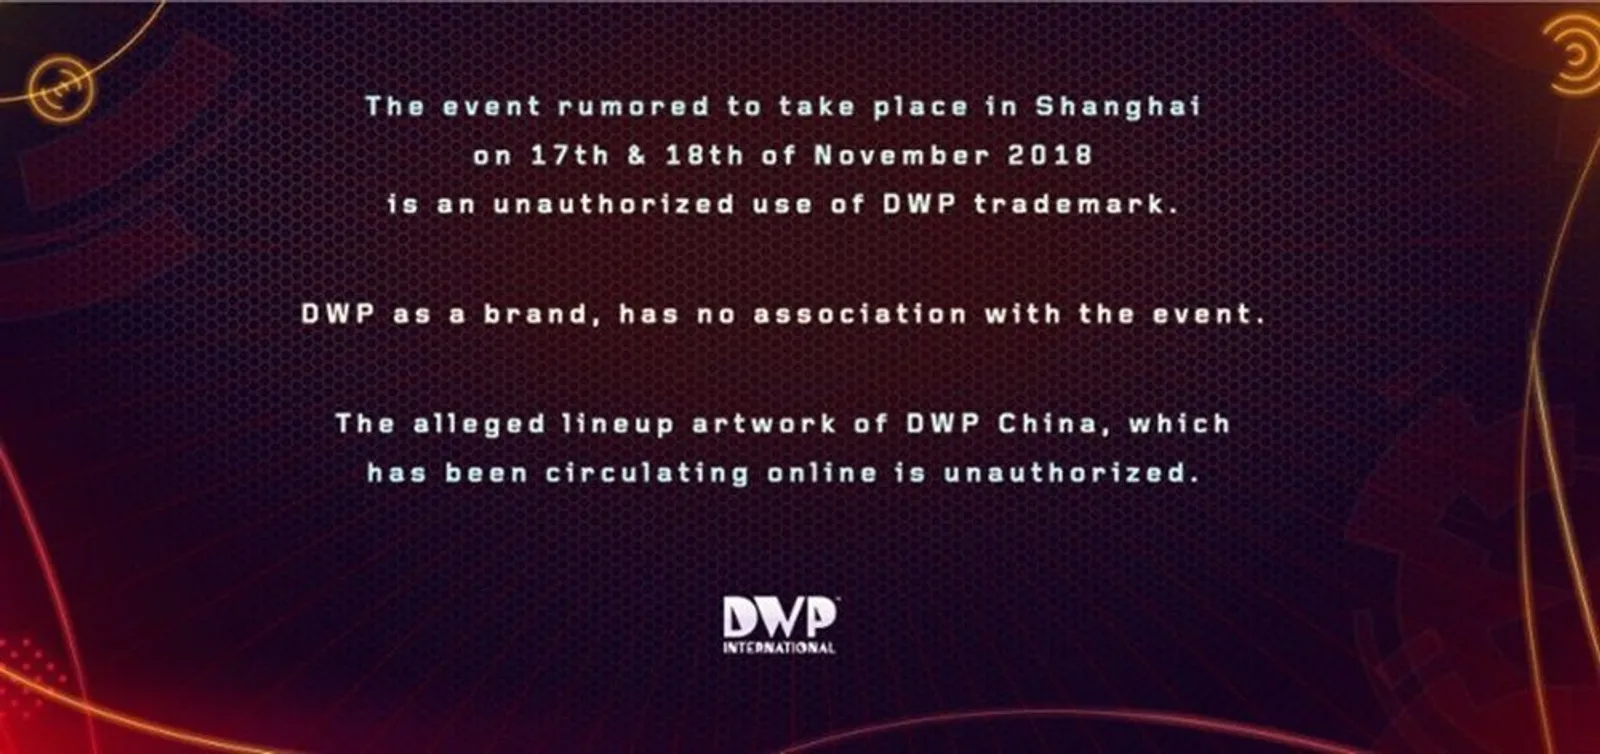 Ditipu, Ini 5 Fakta Nicki Minaj yang Batal Tampil di DWP Shanghai